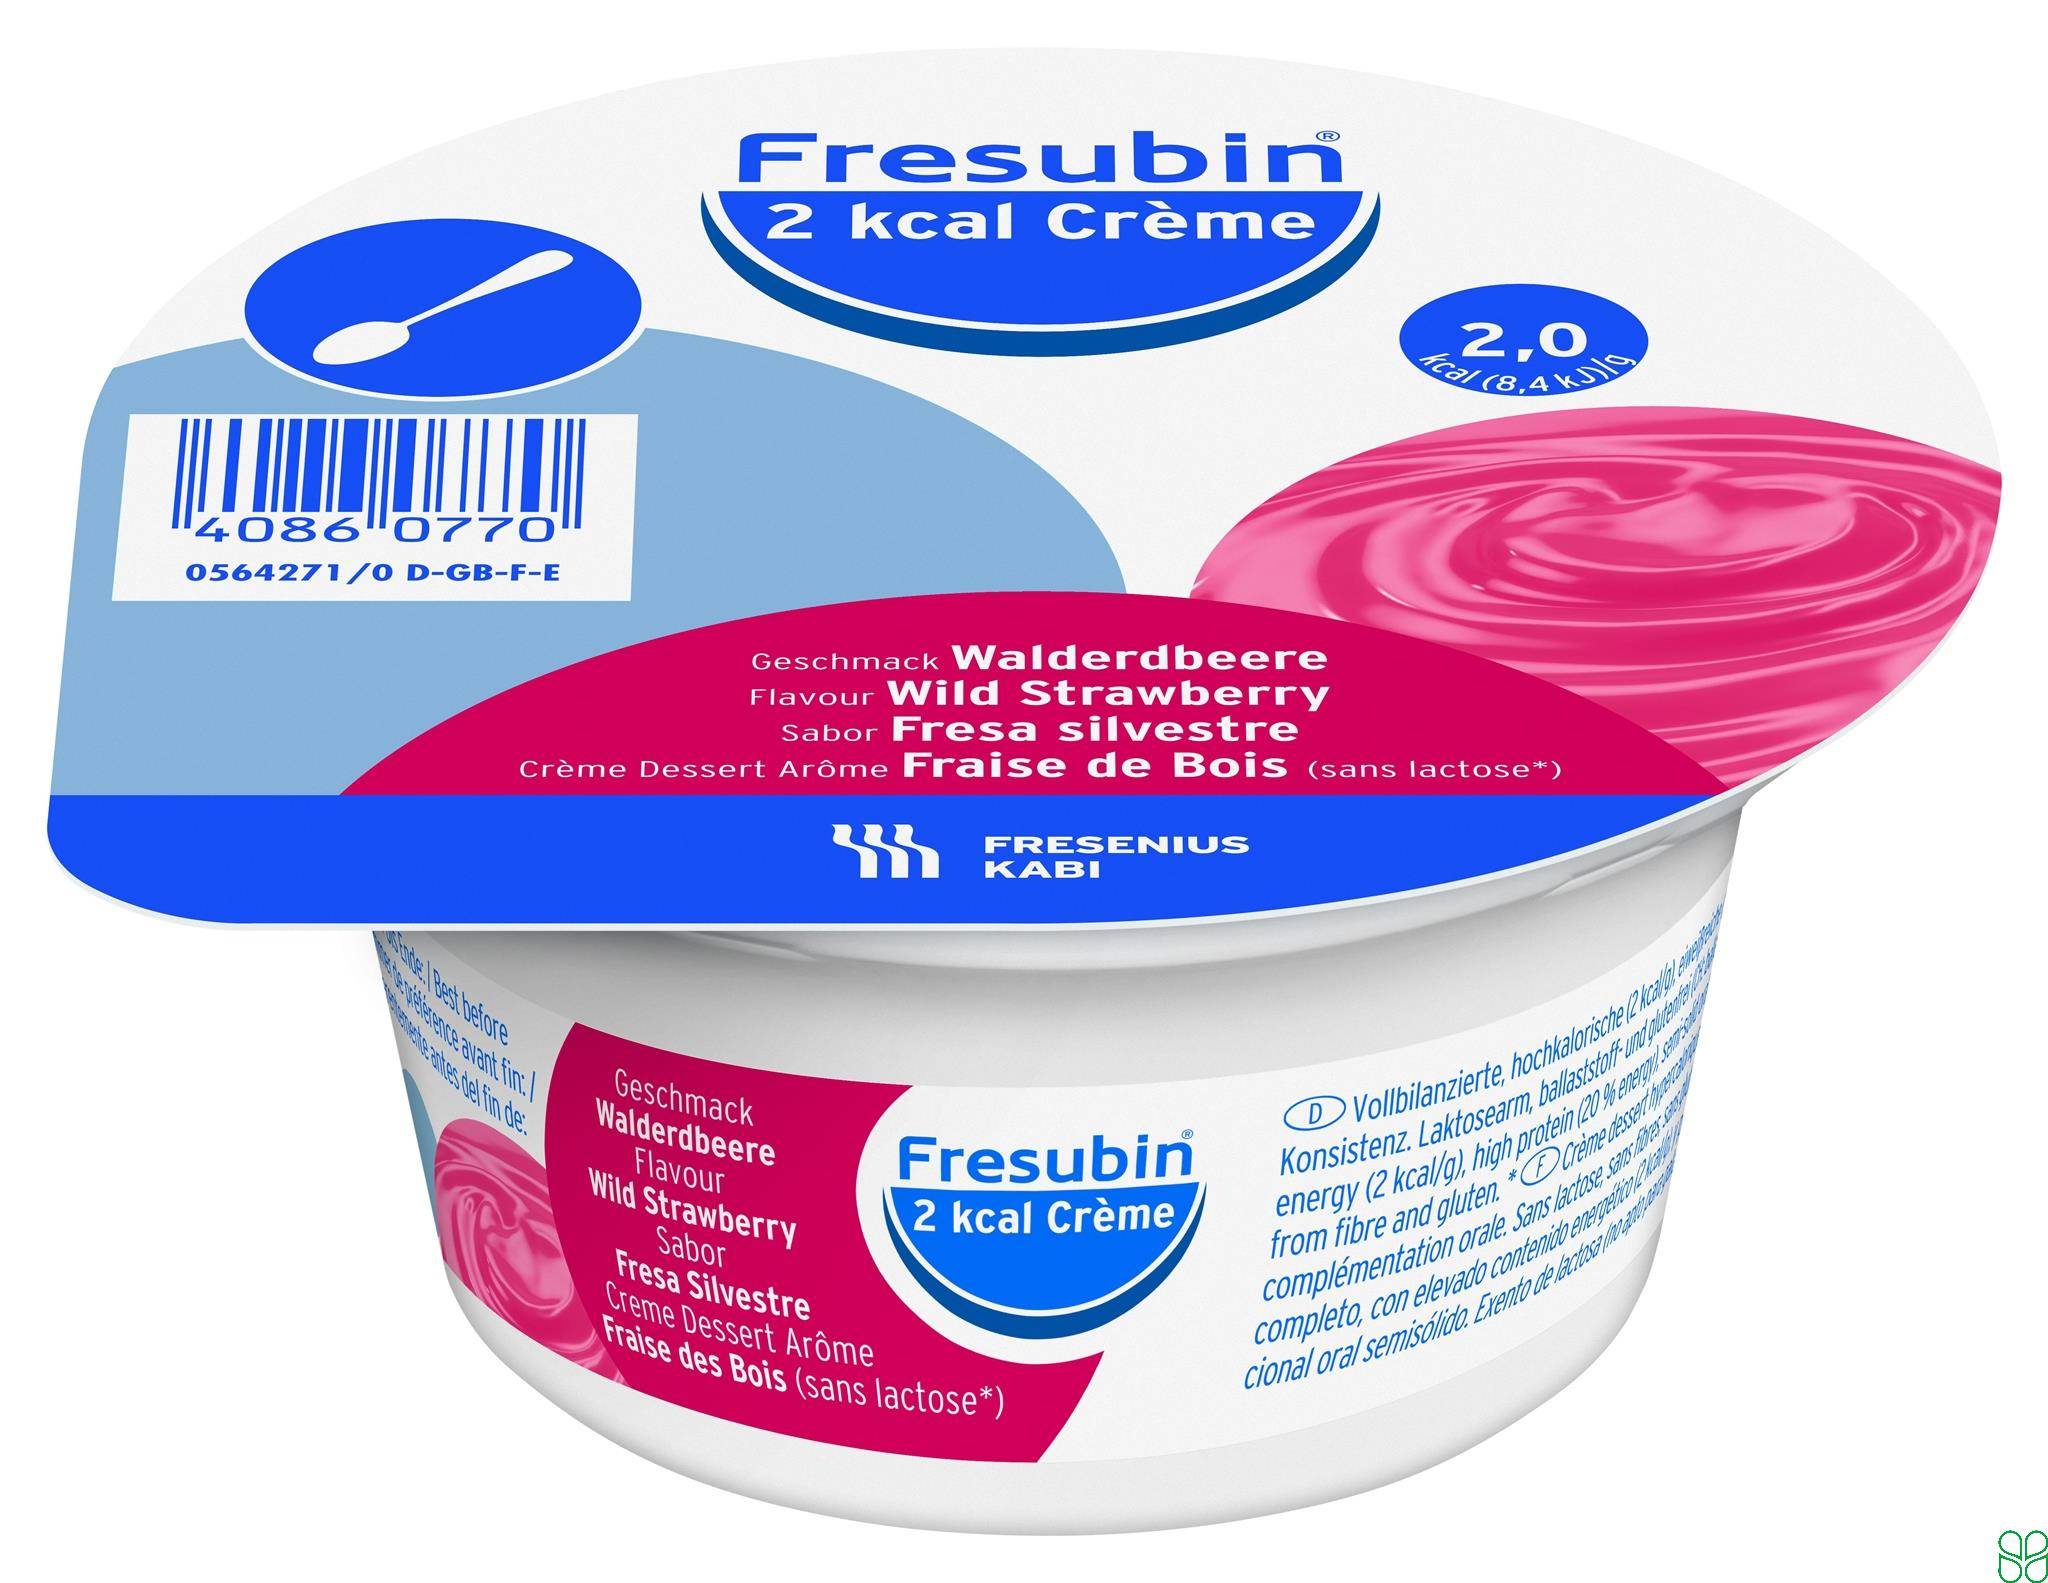 Fresubin 2 Kcal Creme Dieetvoeding BosAardbei 4x 125g